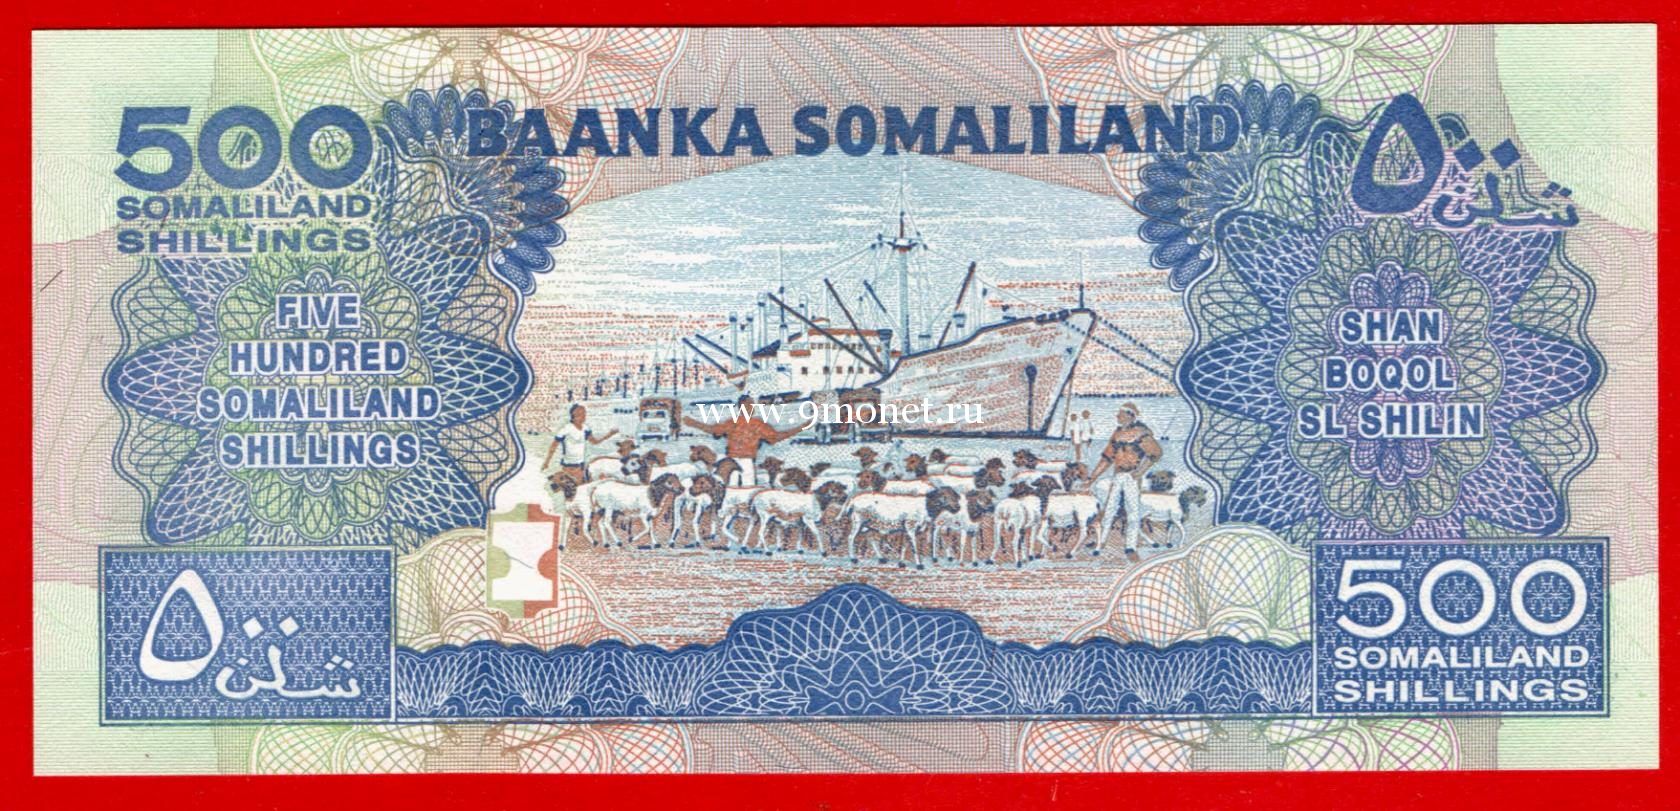 Сомалиленд банкнота 500 шиллингов 2011 года